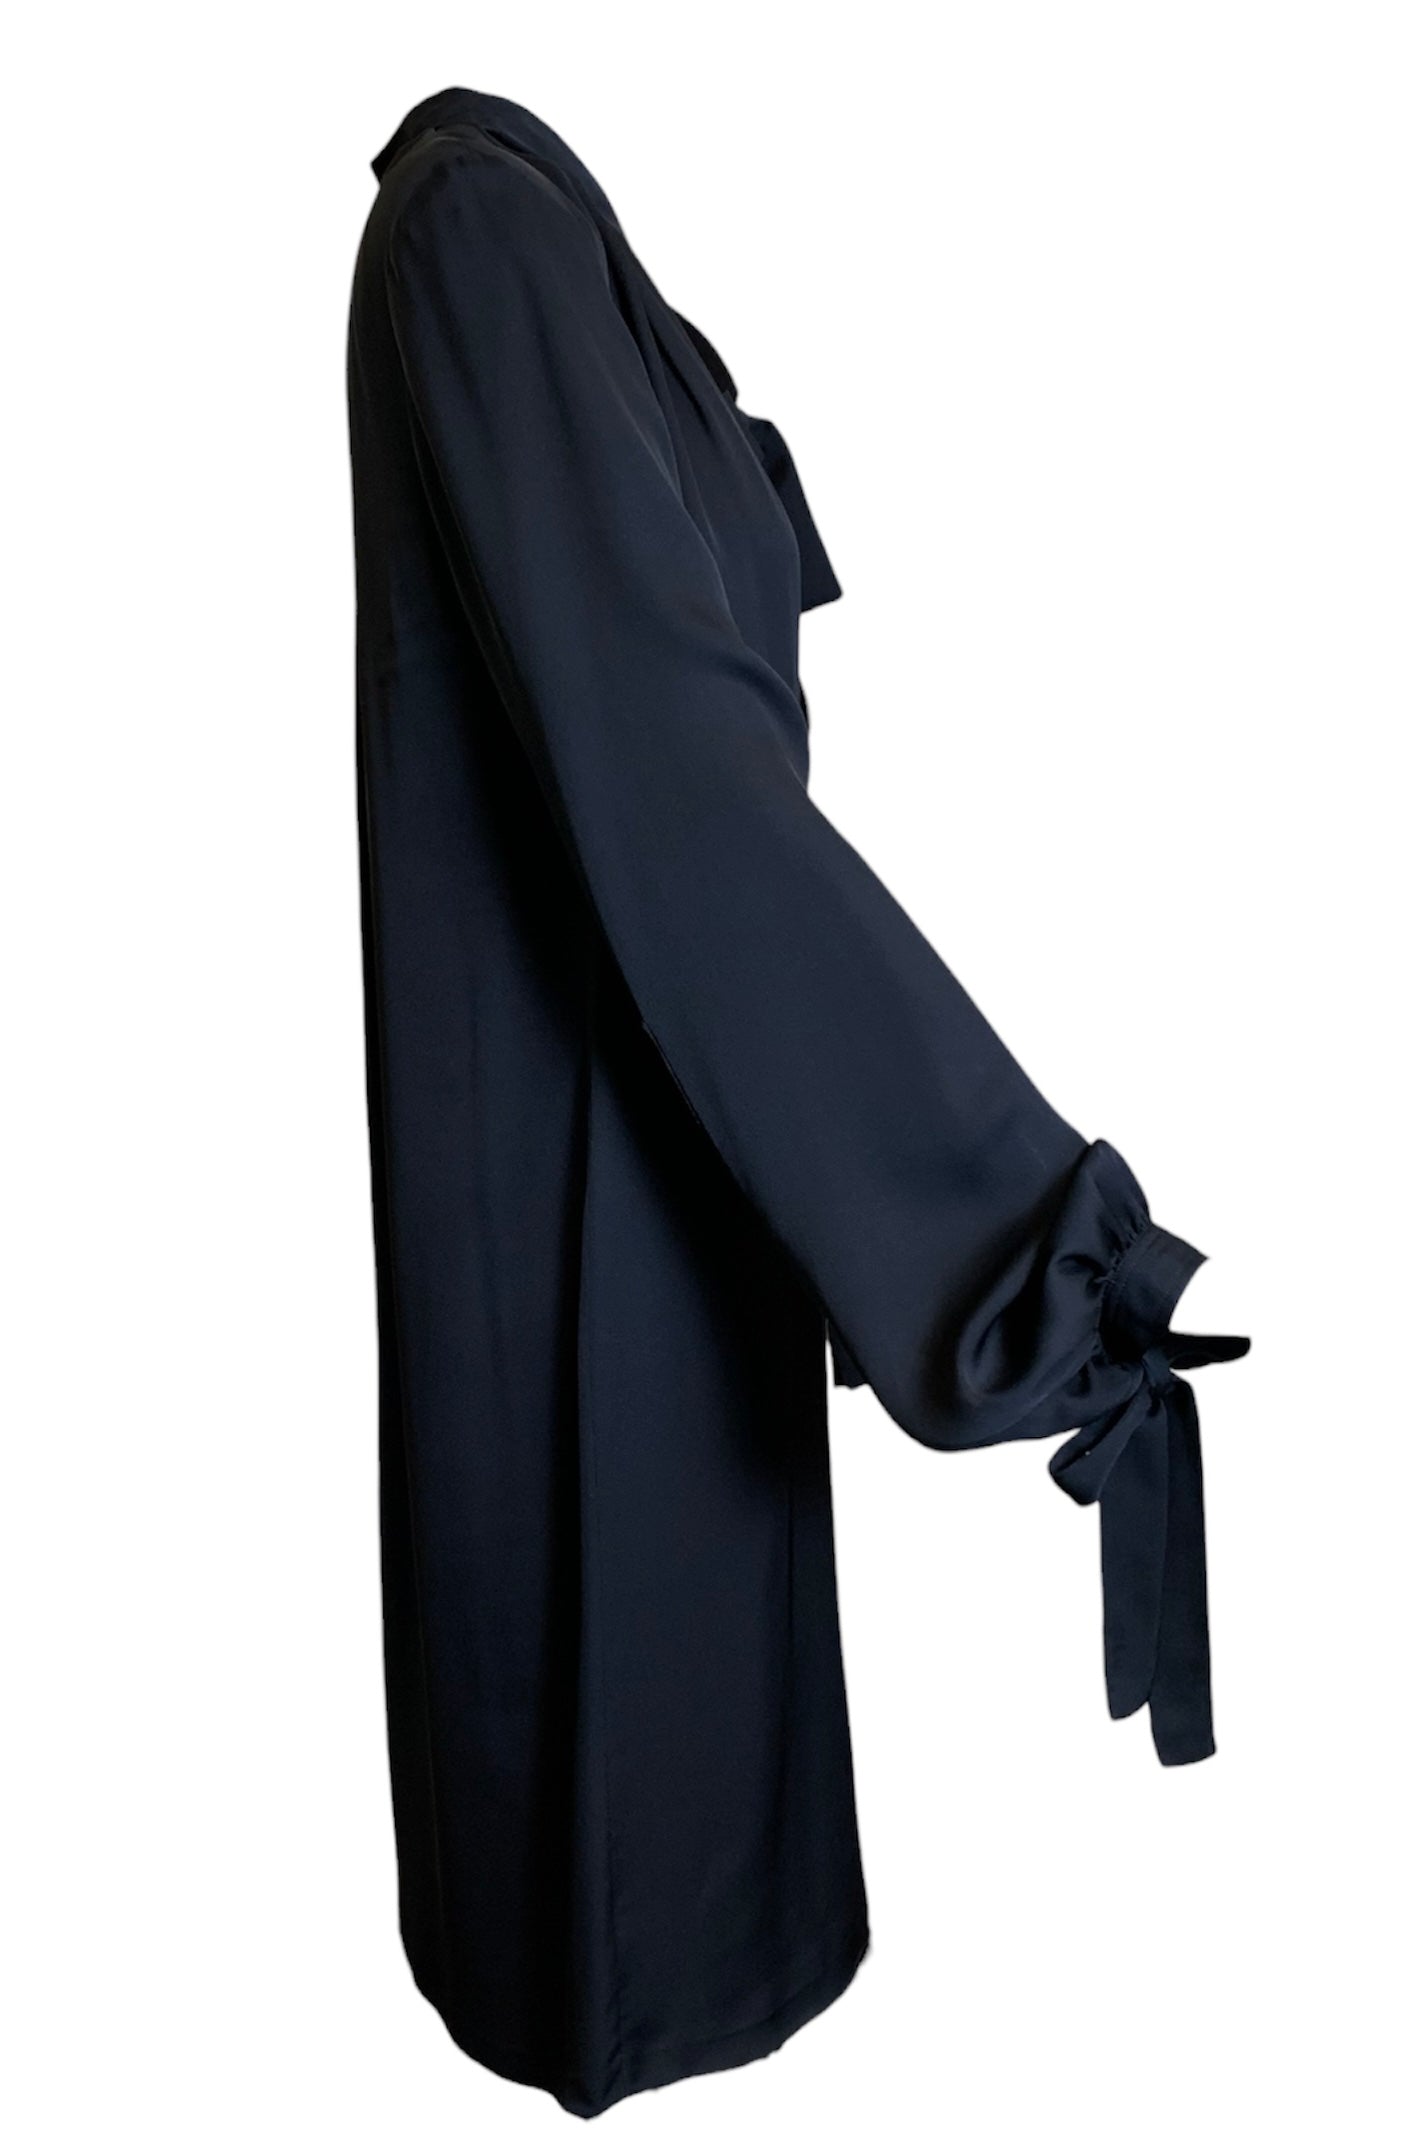 Tom Ford for Gucci Black Silk Sheath Tie Dress